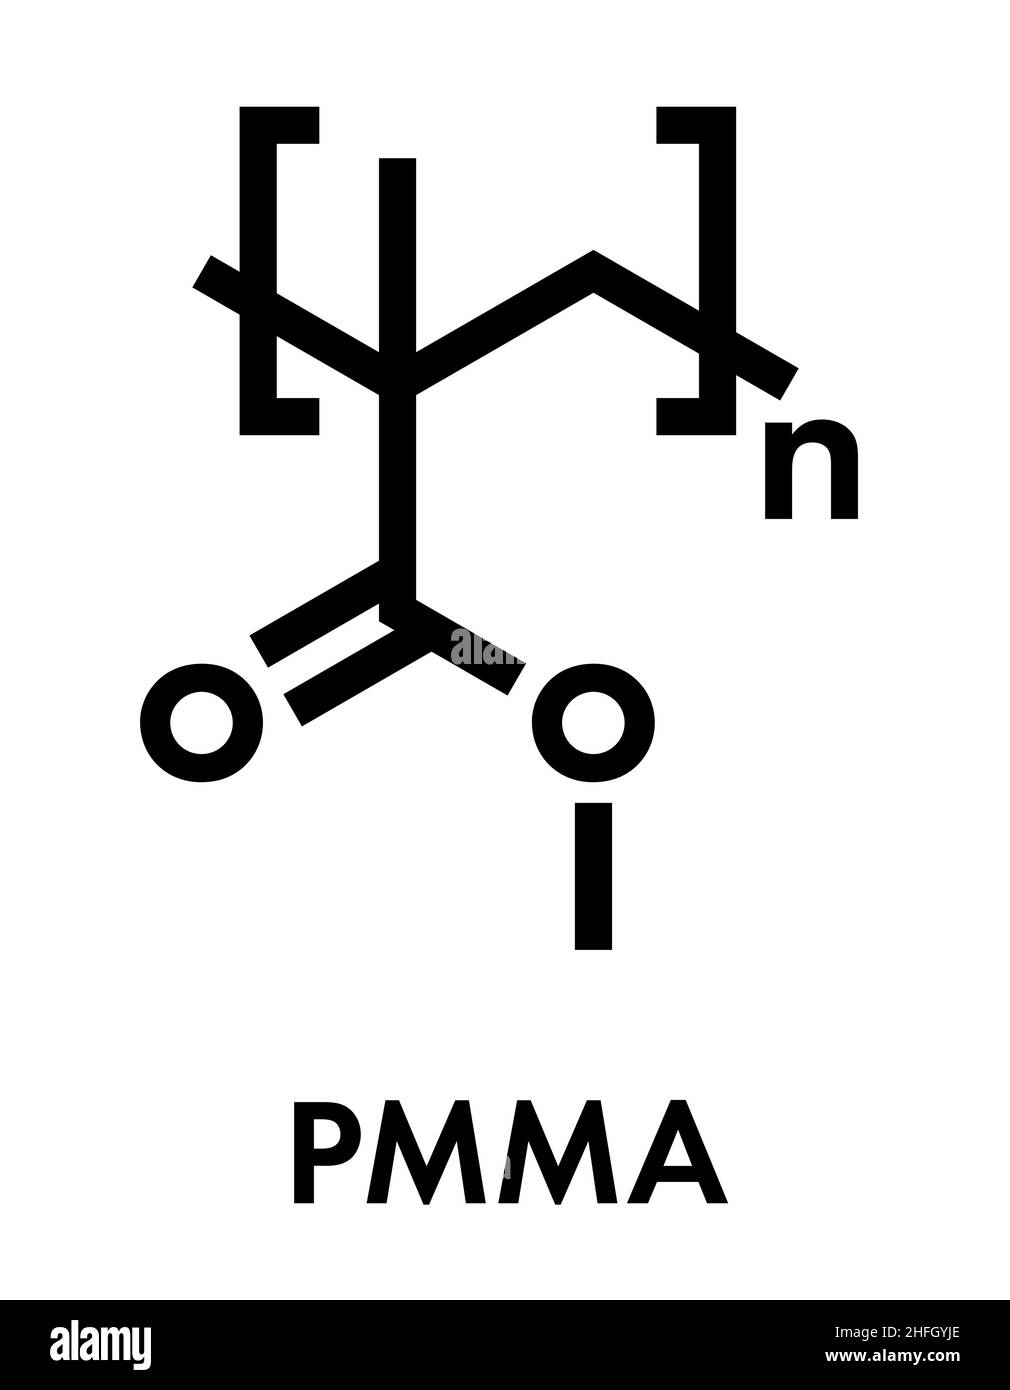 Acrylglas oder Polymethylmethacrylat, chemische Struktur. PMMA ist der Hauptbestandteil von Acrylfarbe (Latex) und Acrylglas. Skelettform Stock Vektor